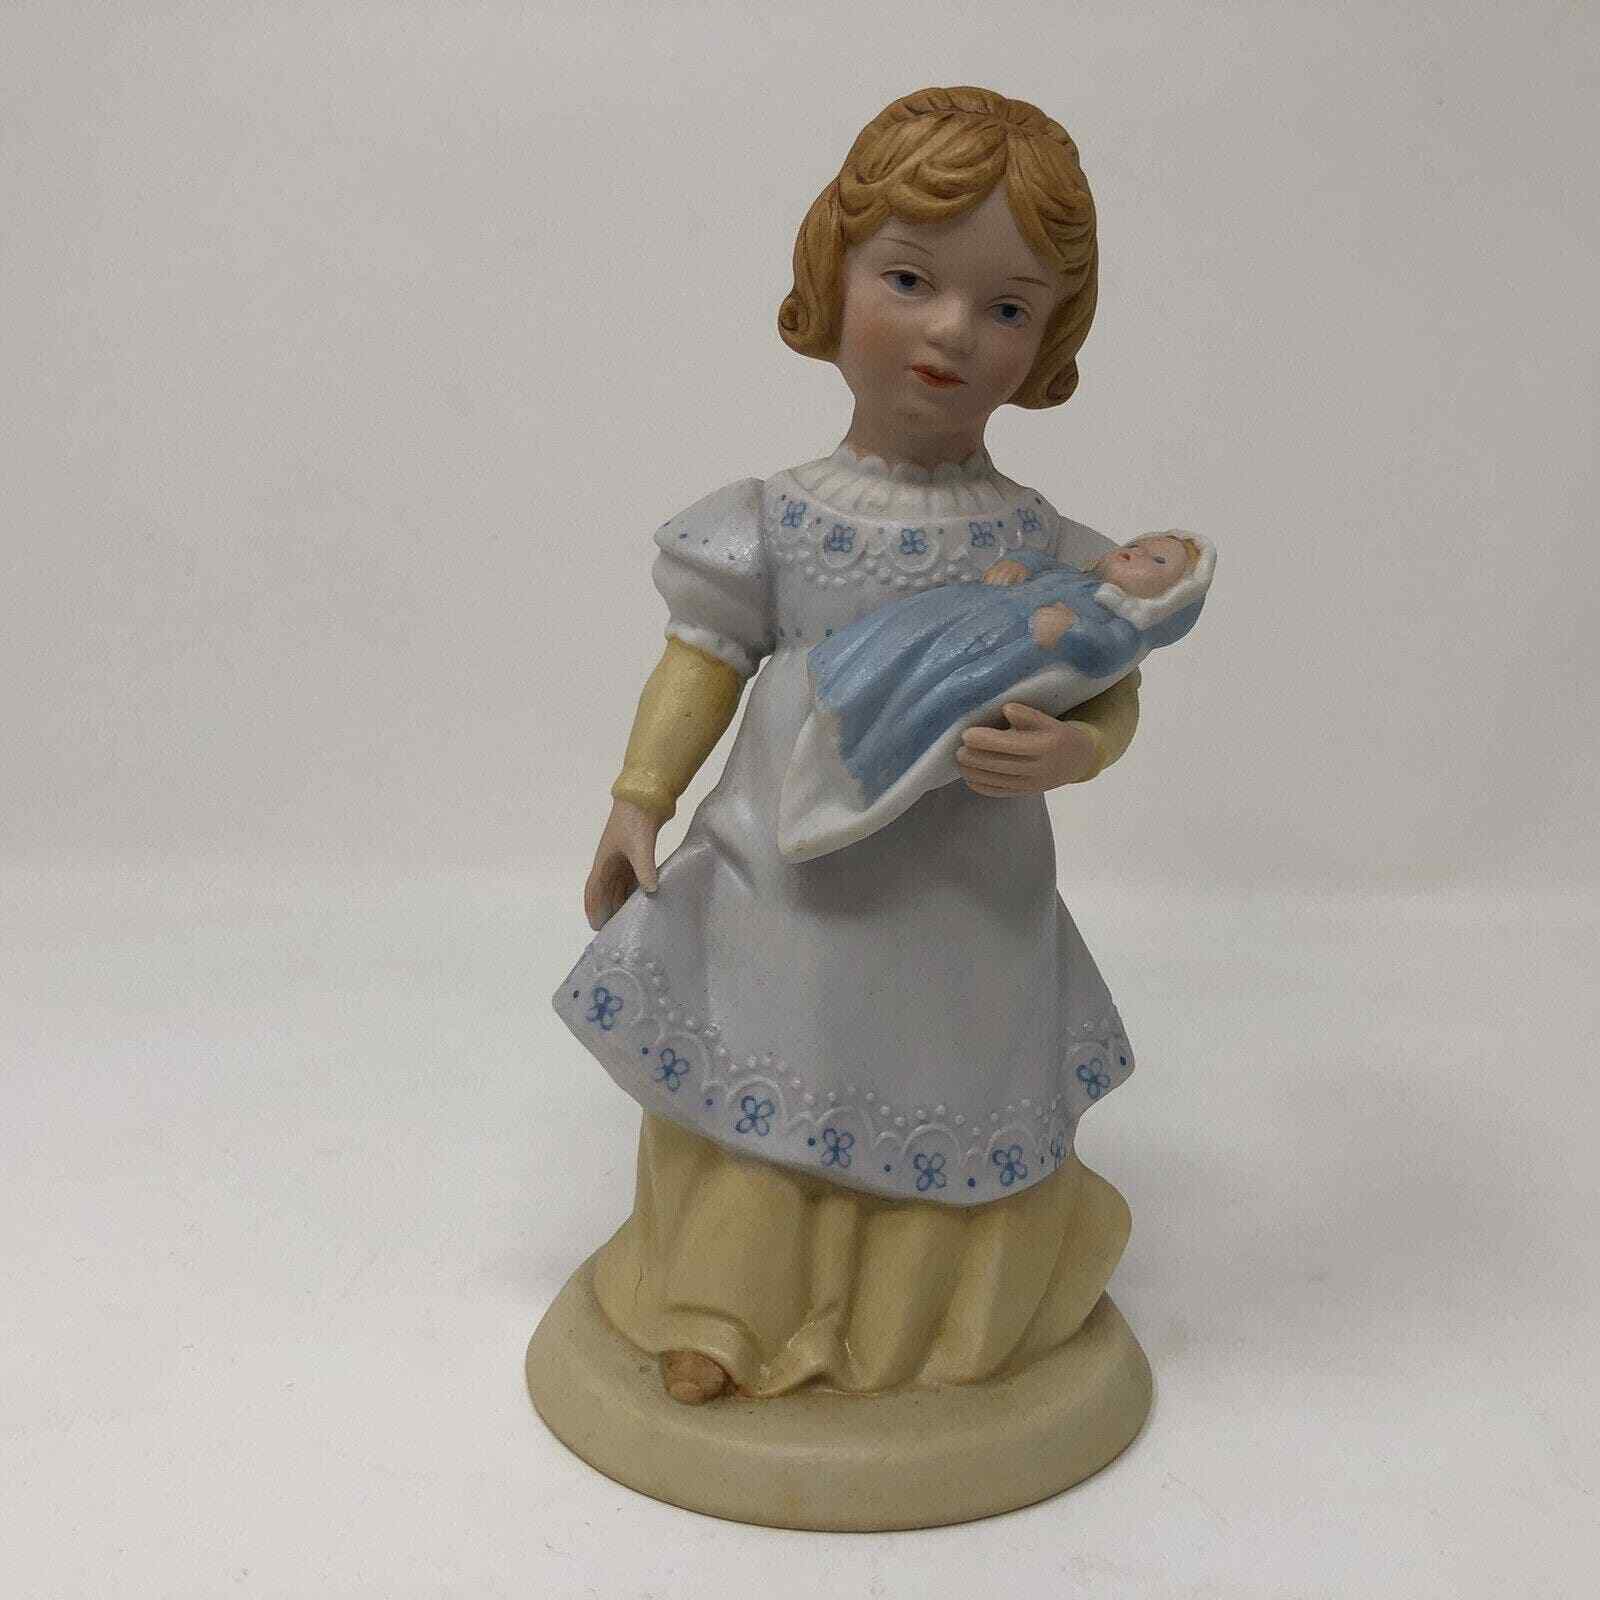 Avon 1981 A Mothers Love Porcelain Figurine Decorative Collectible Vintage